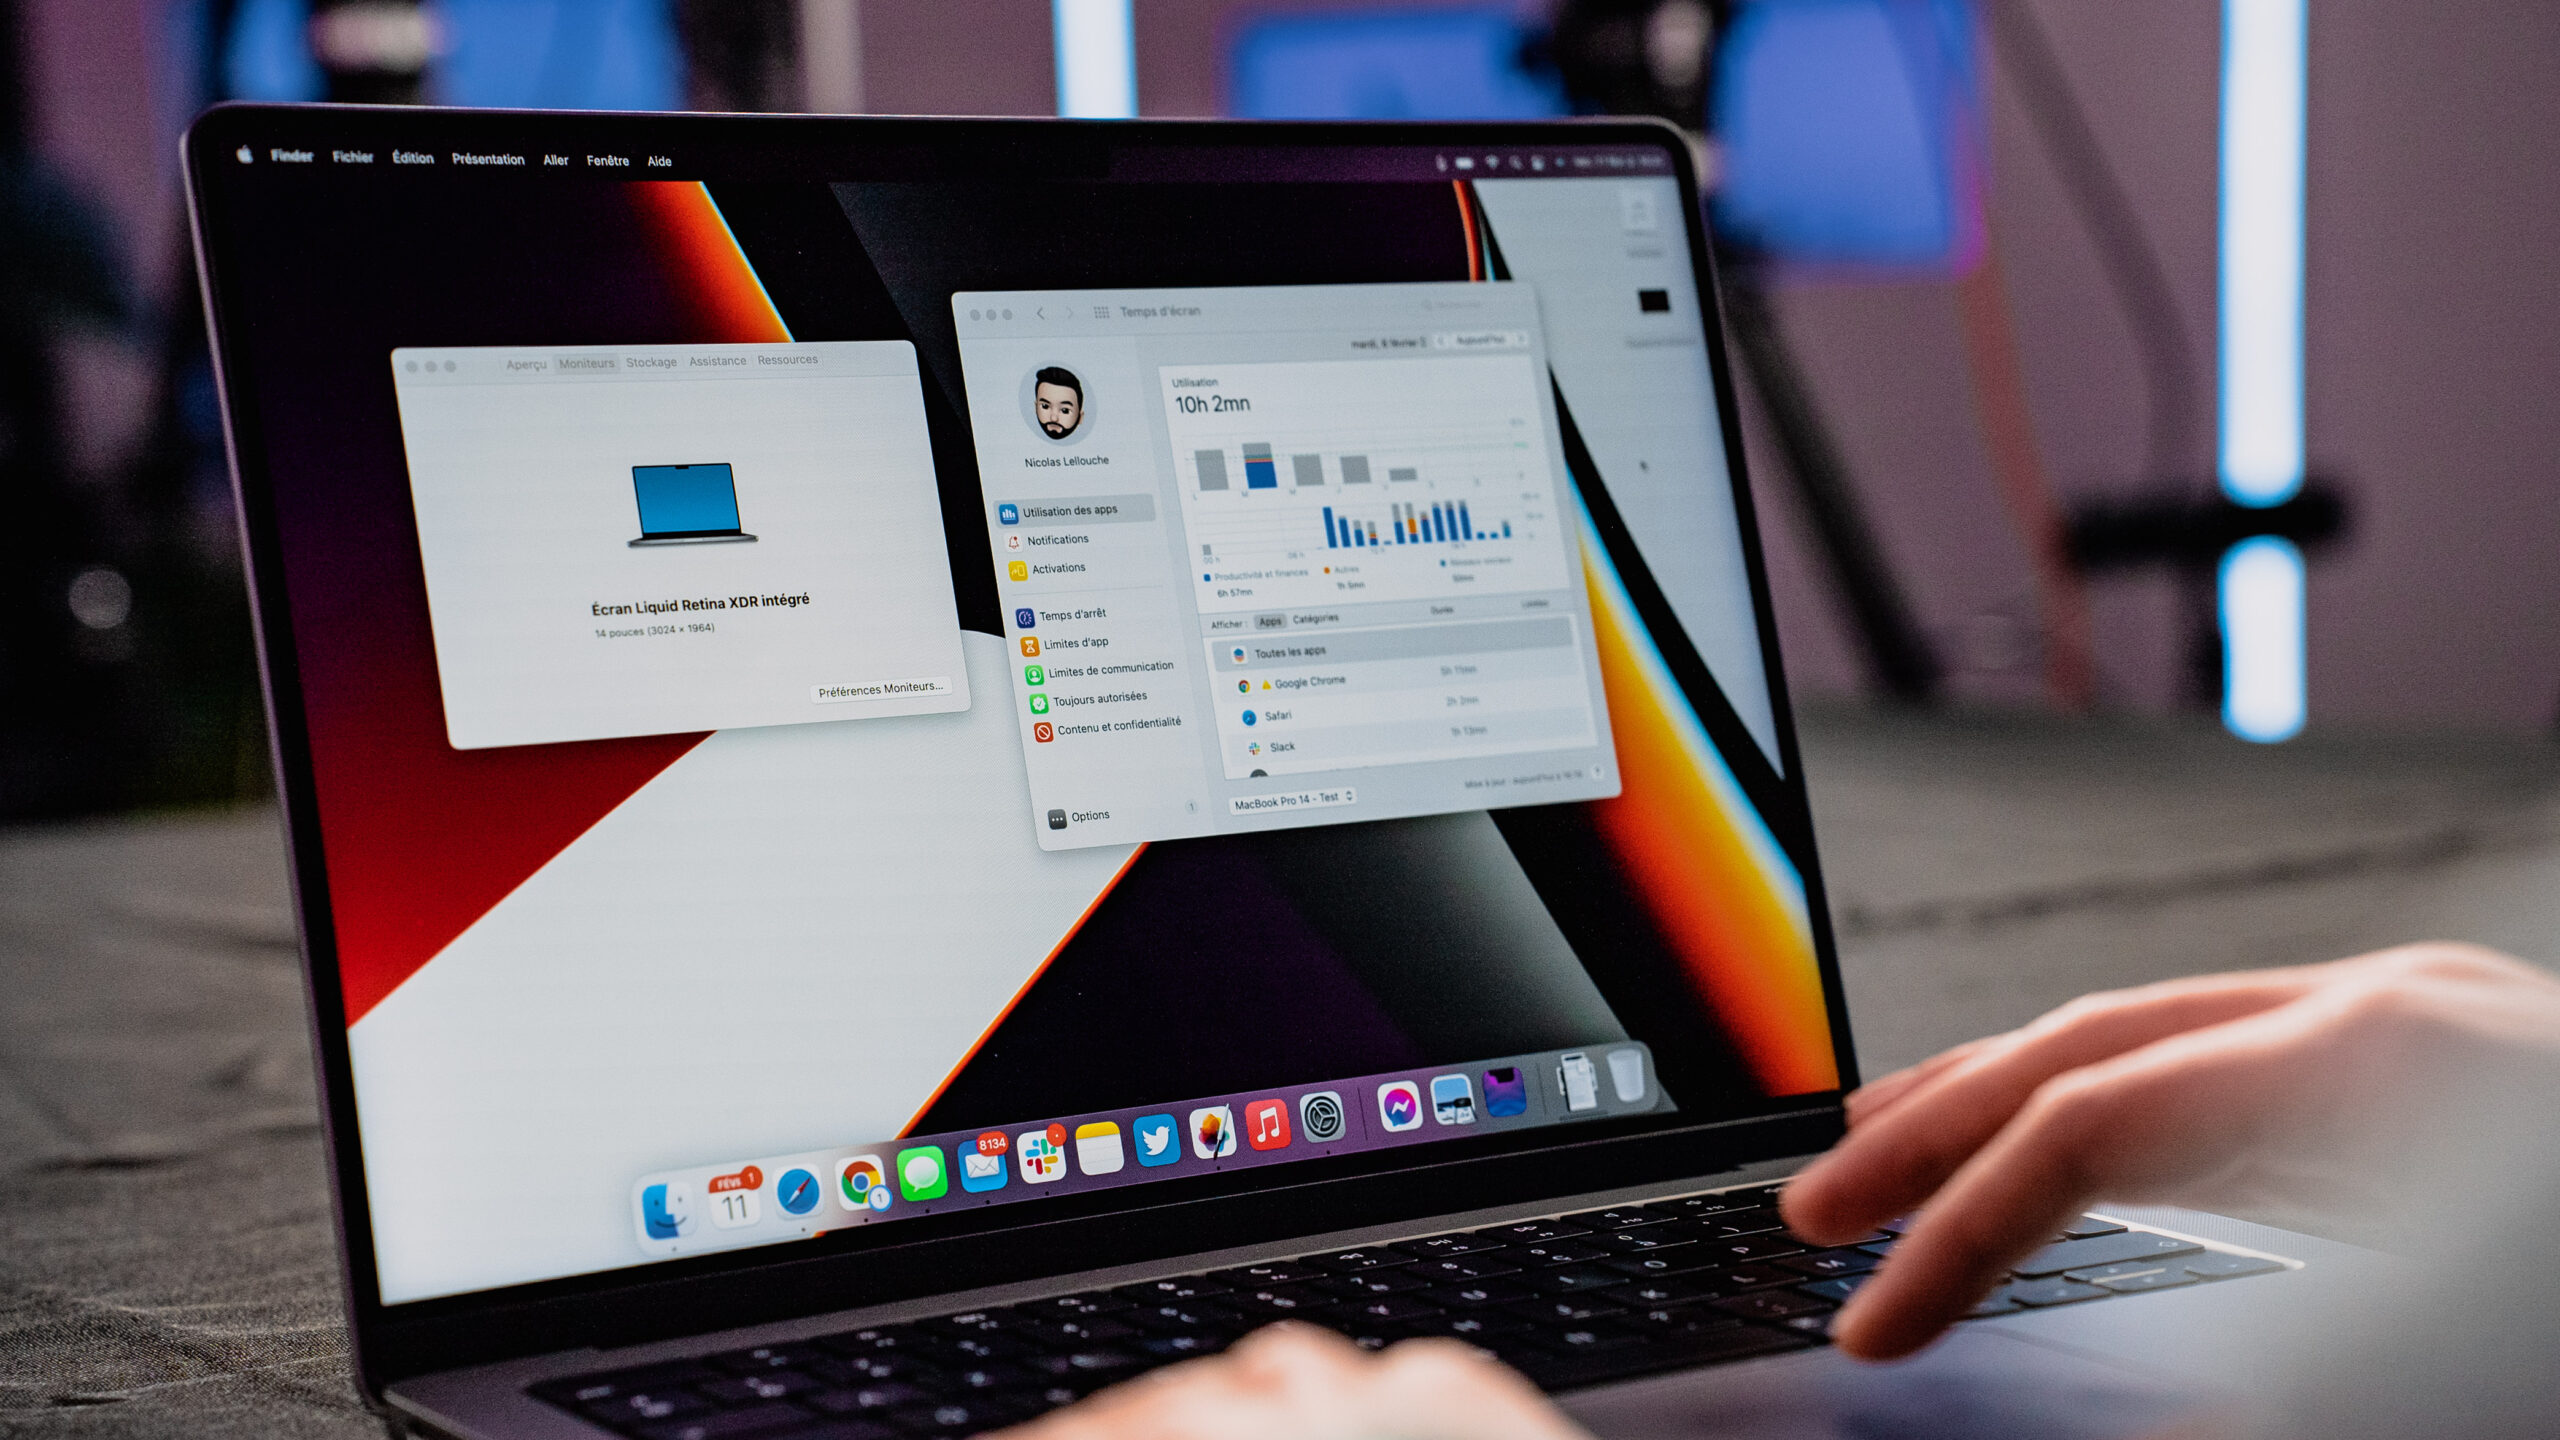 Le MacBook Air 15 d'Apple est déjà en promotion - Numerama